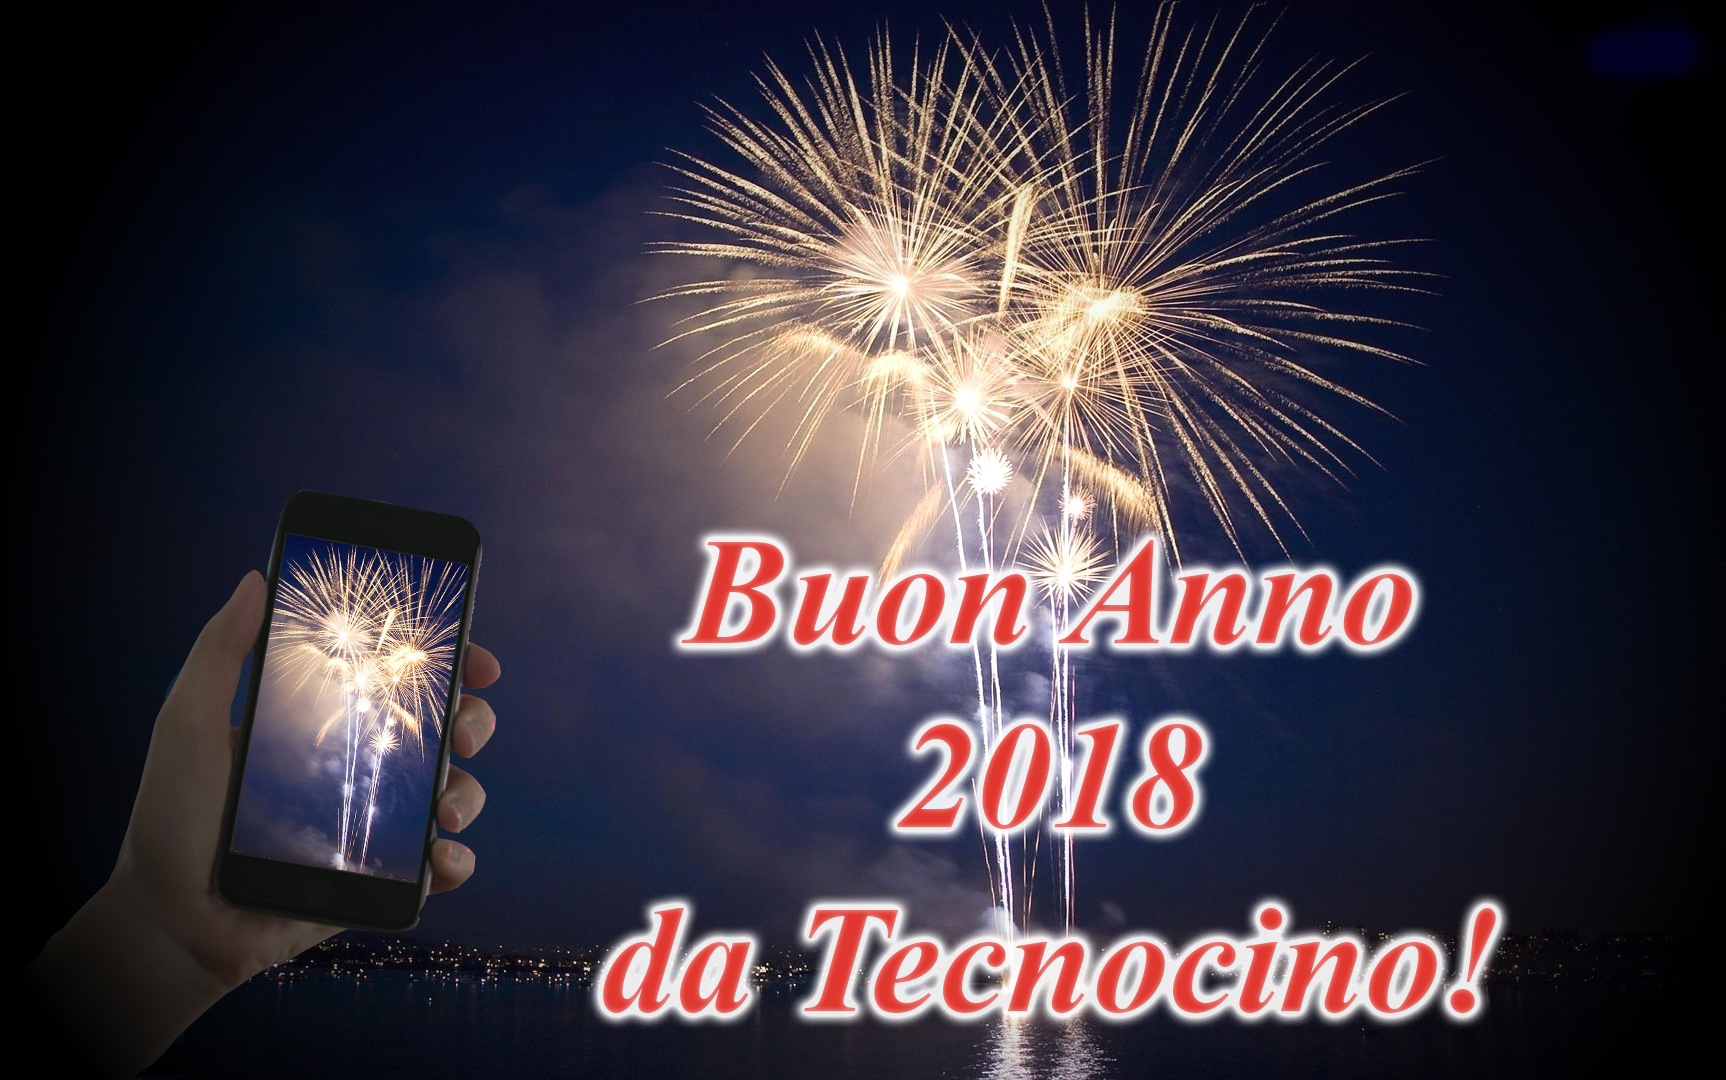 Buon Anno 2018 Tecnocino (3)